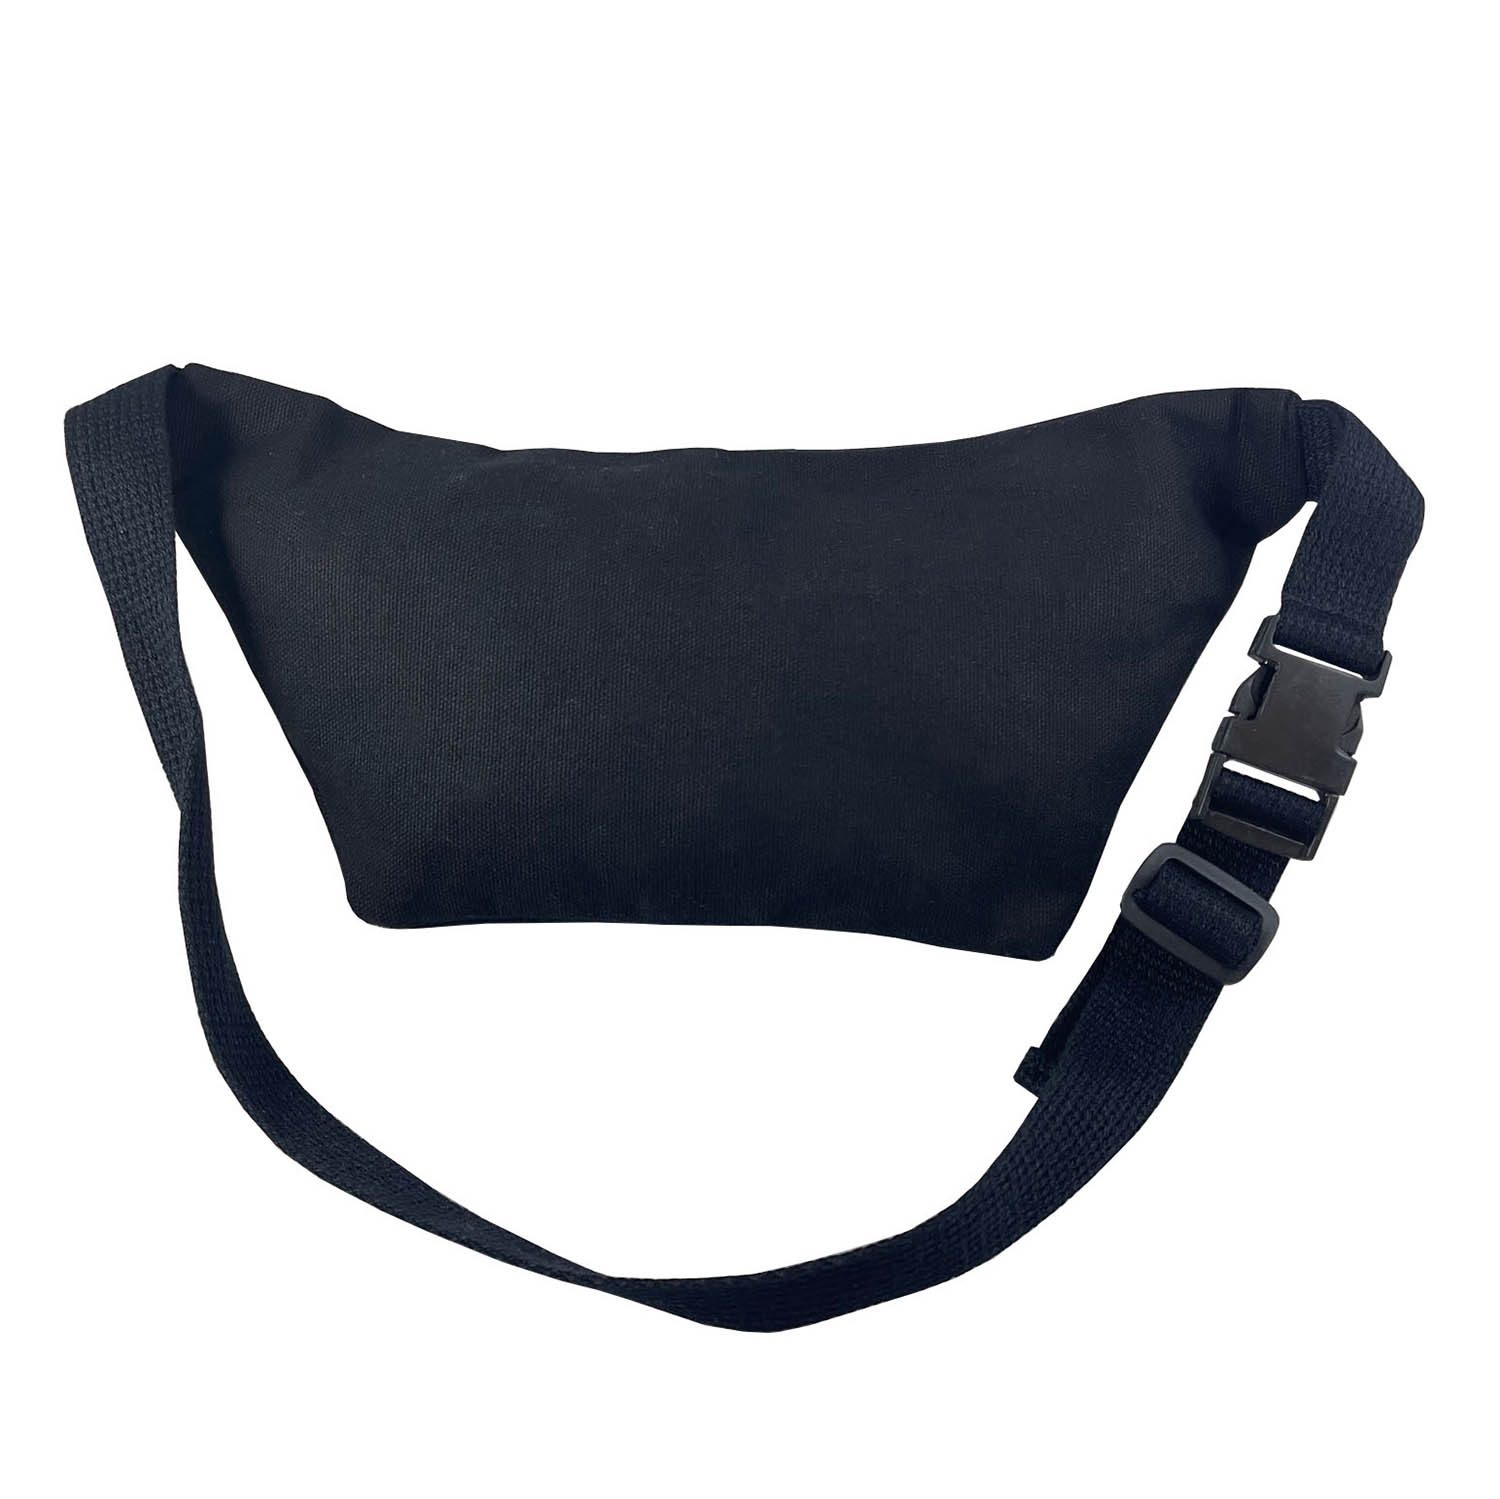 Black cotton waist bag with zipper